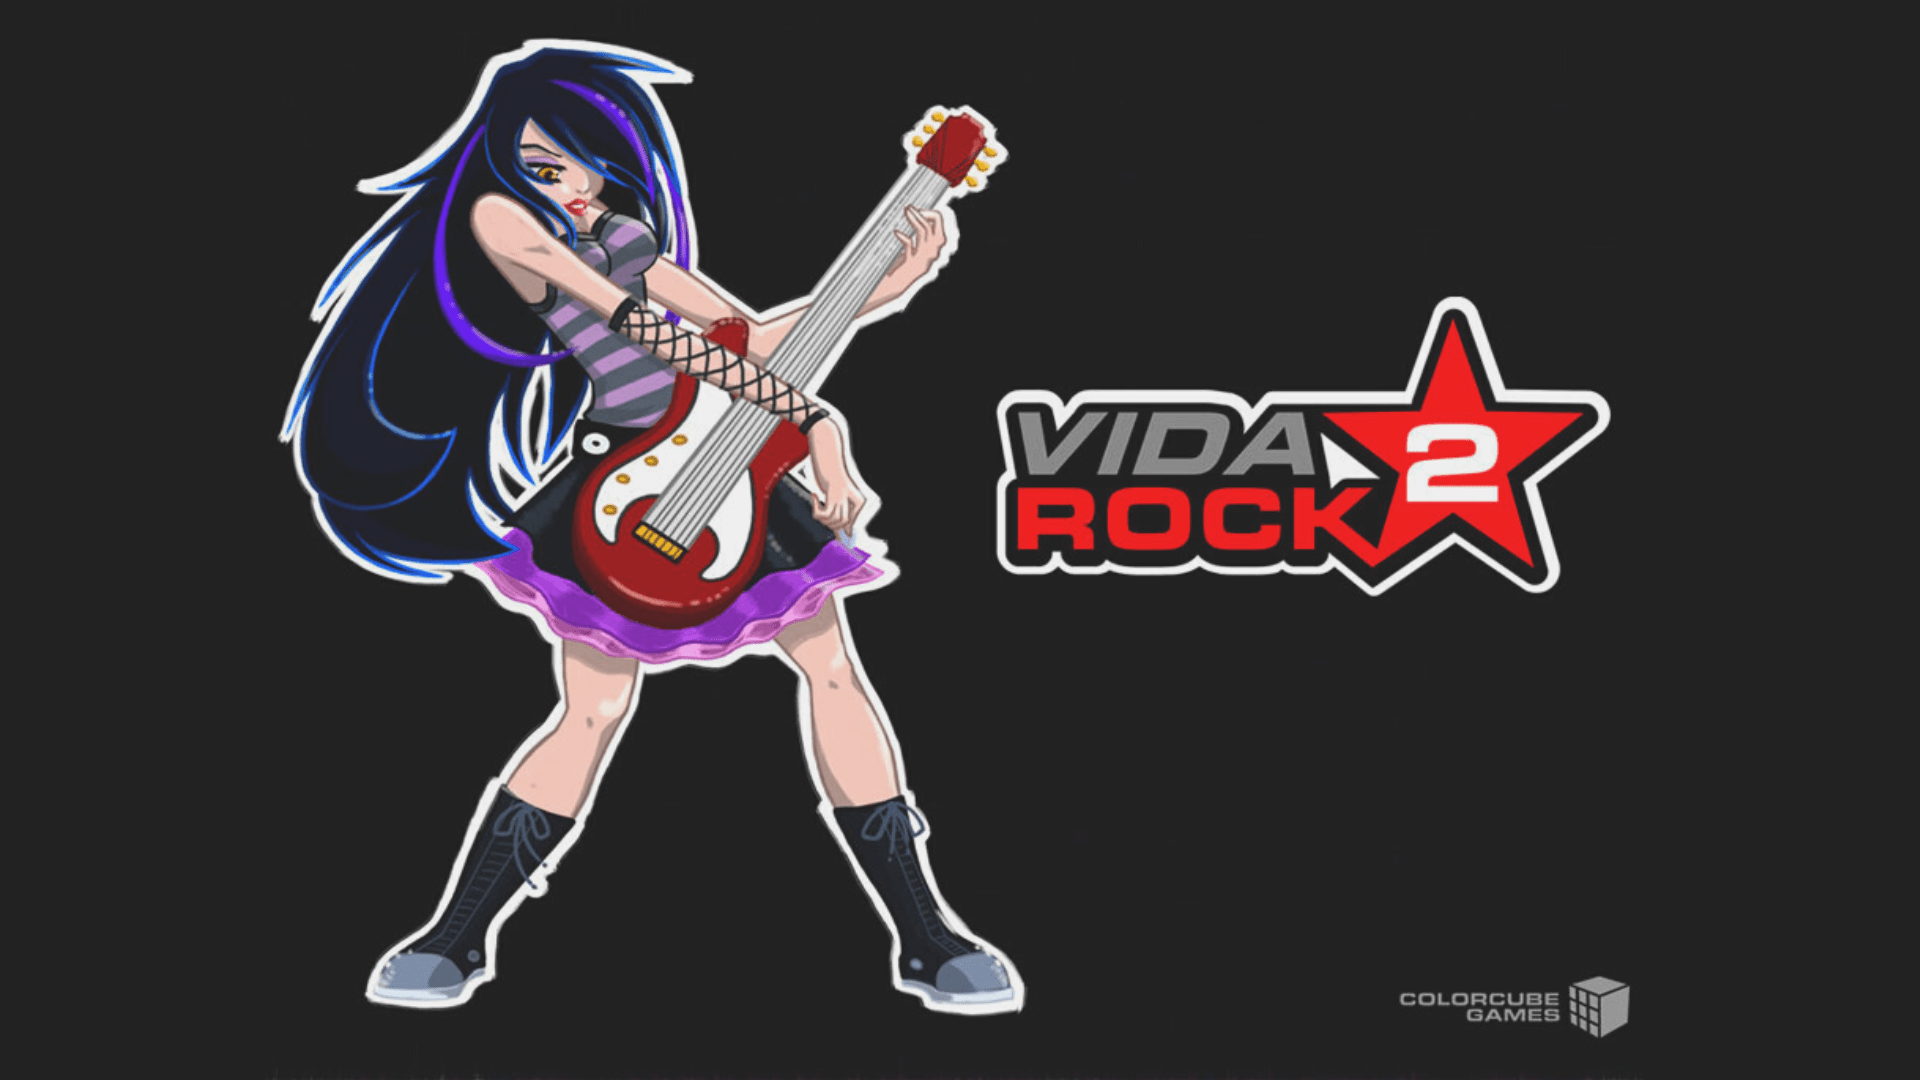 Vida Rock 2